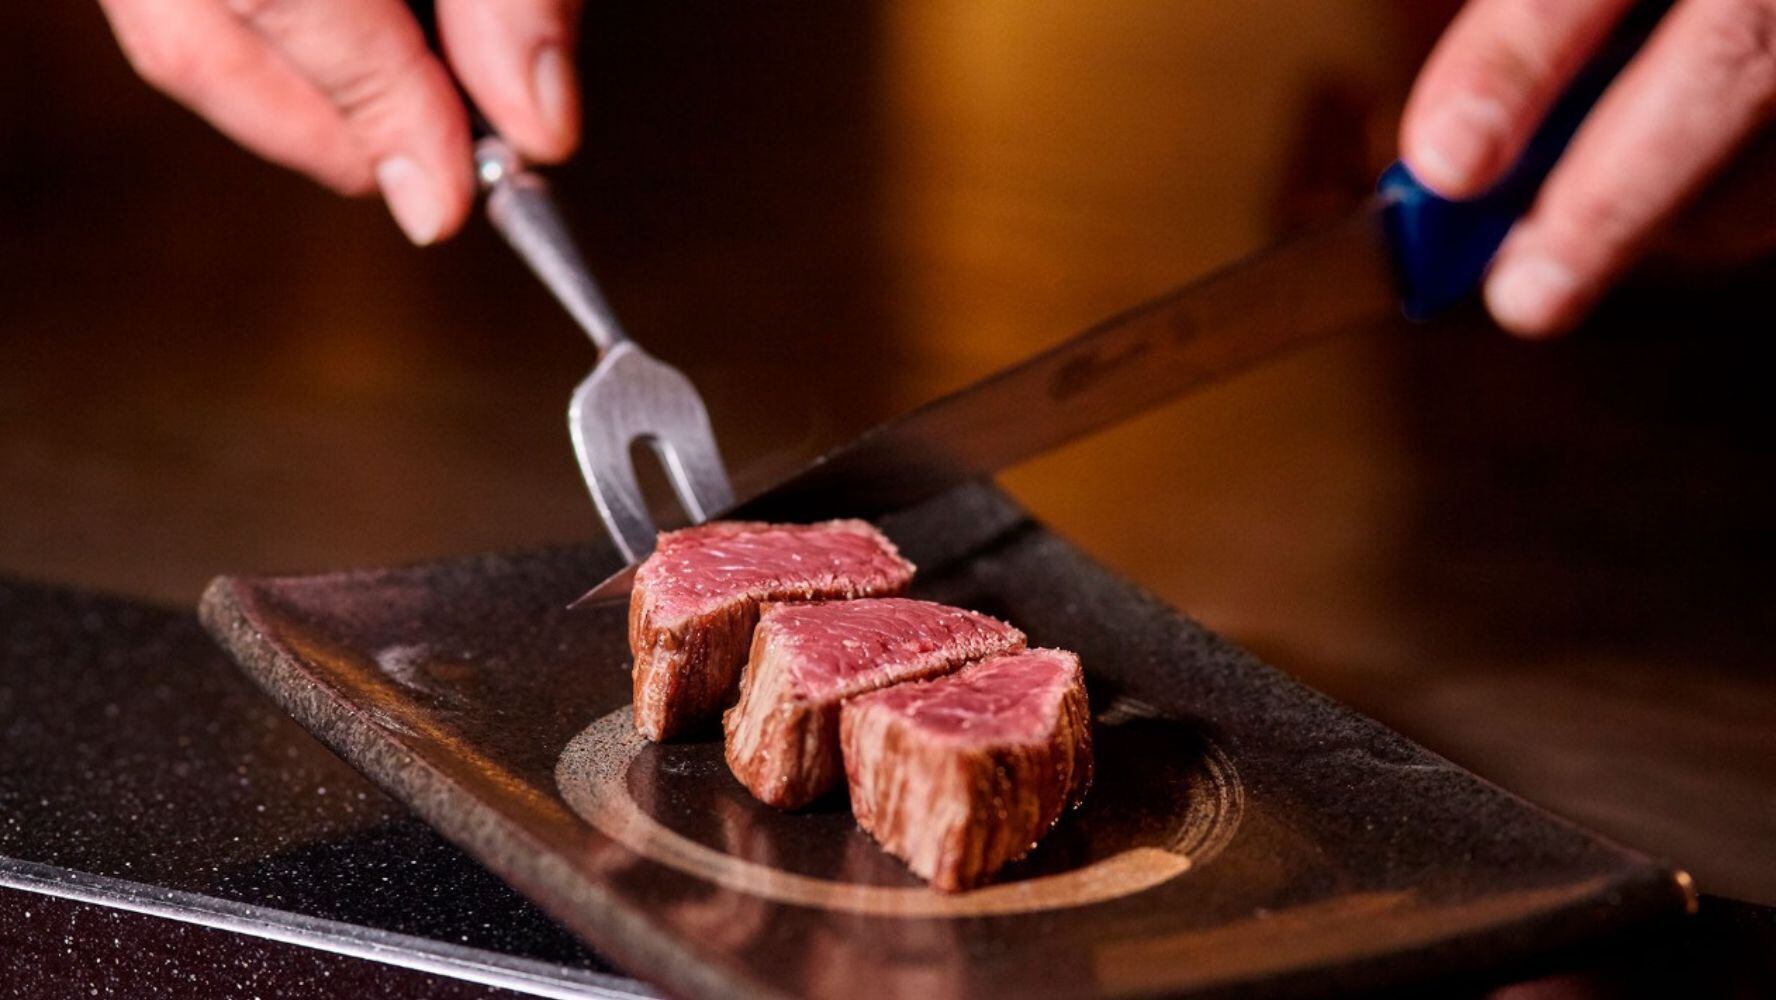 La carne Kobe es considerada como uno de los alimentos más caros. (Foto: Shutterstock)